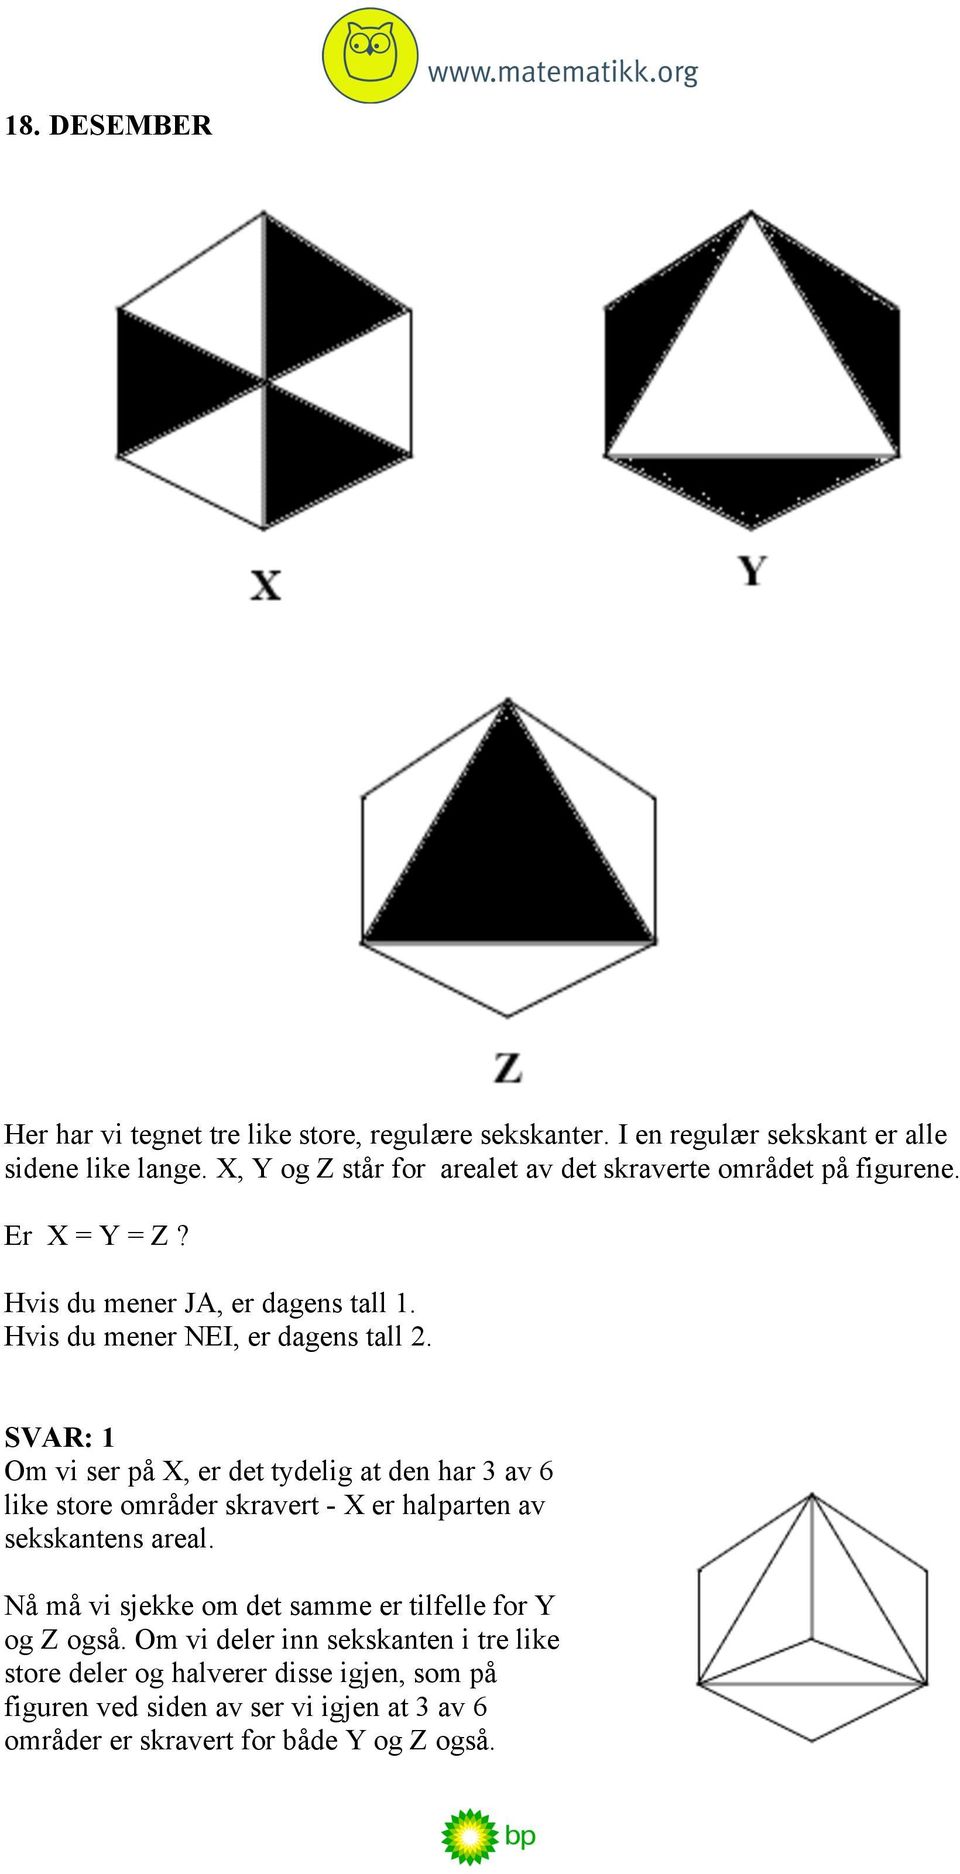 SVAR: 1 Om vi ser på X, er det tydelig at den har 3 av 6 like store områder skravert - X er halparten av sekskantens areal.